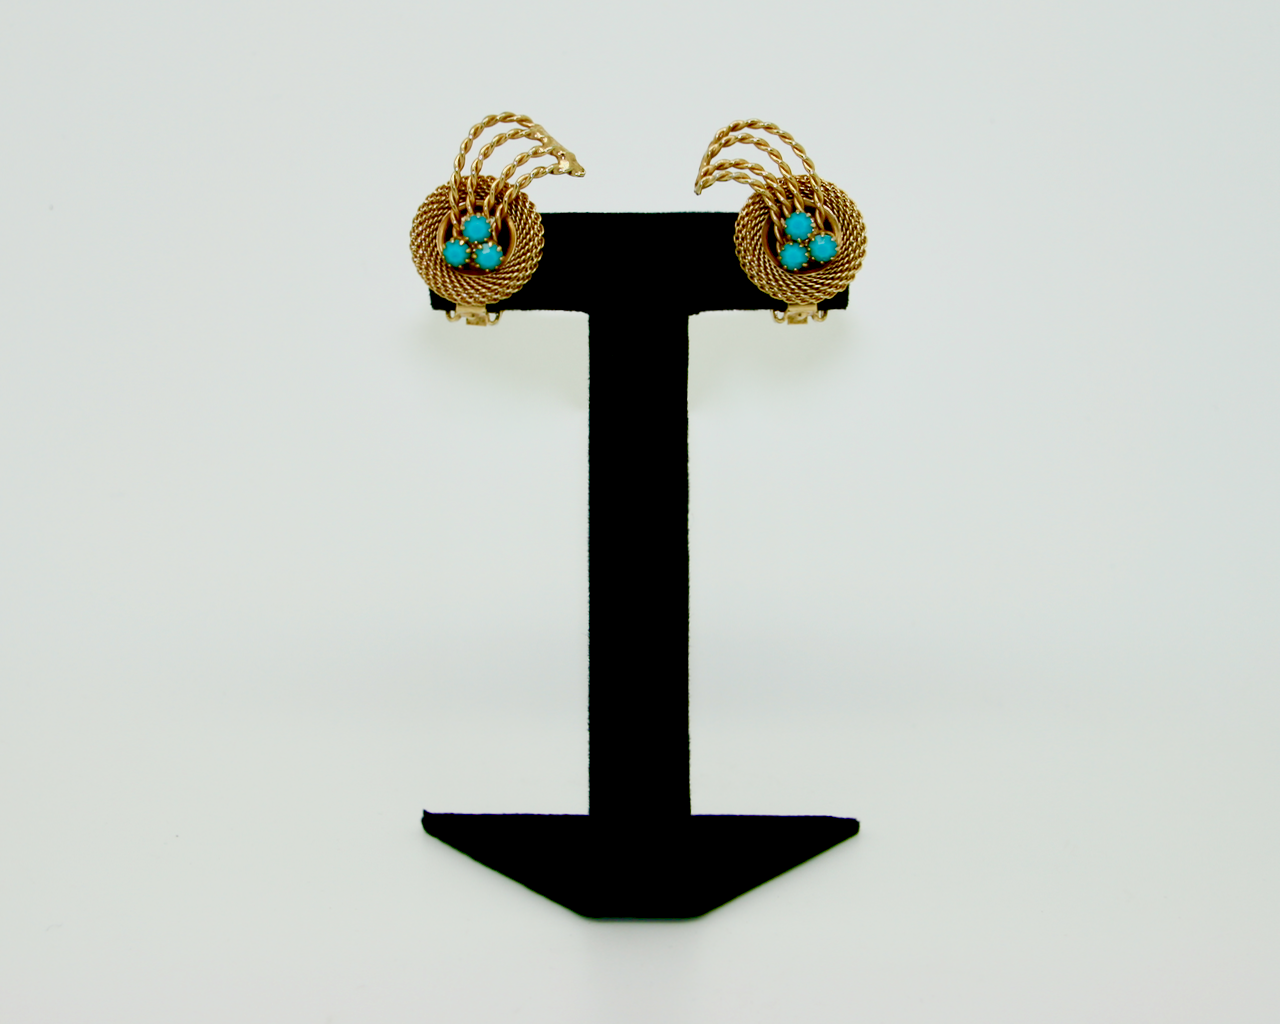 1960's HOBÉ gold mesh & turquois earrings